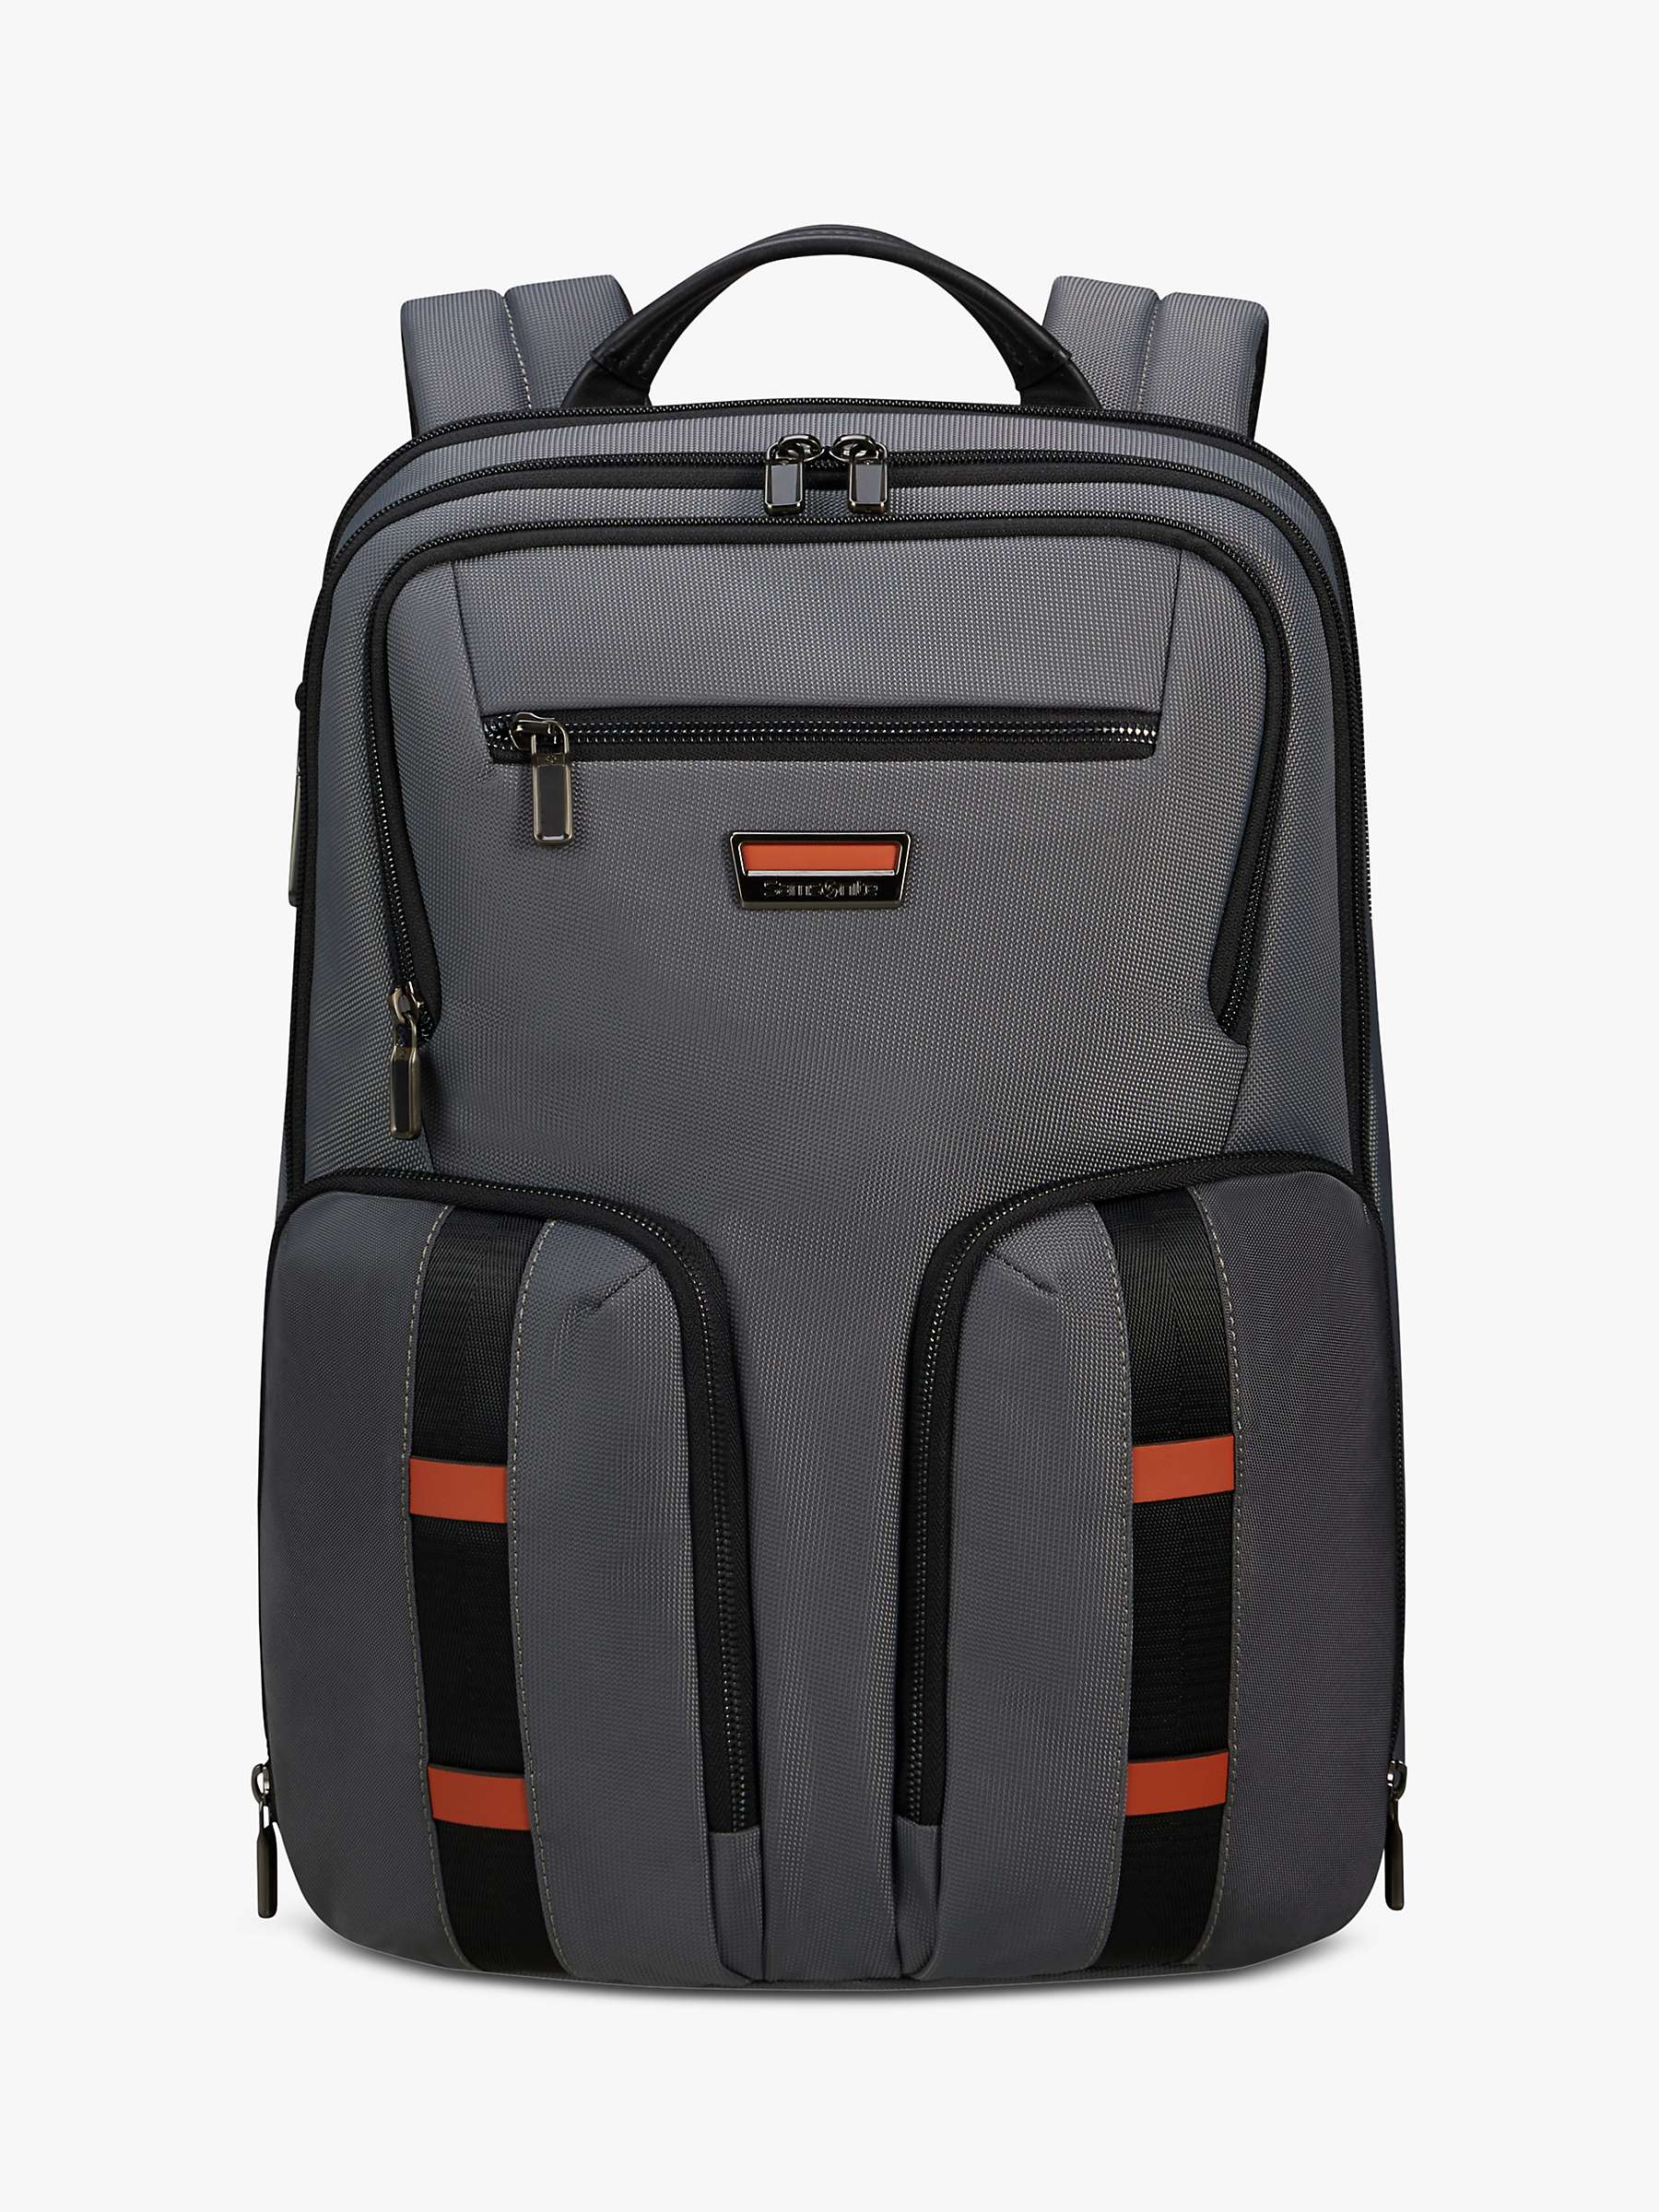 Buy Samsonite Urban Eye 15.6" Backpack, Grey Online at johnlewis.com